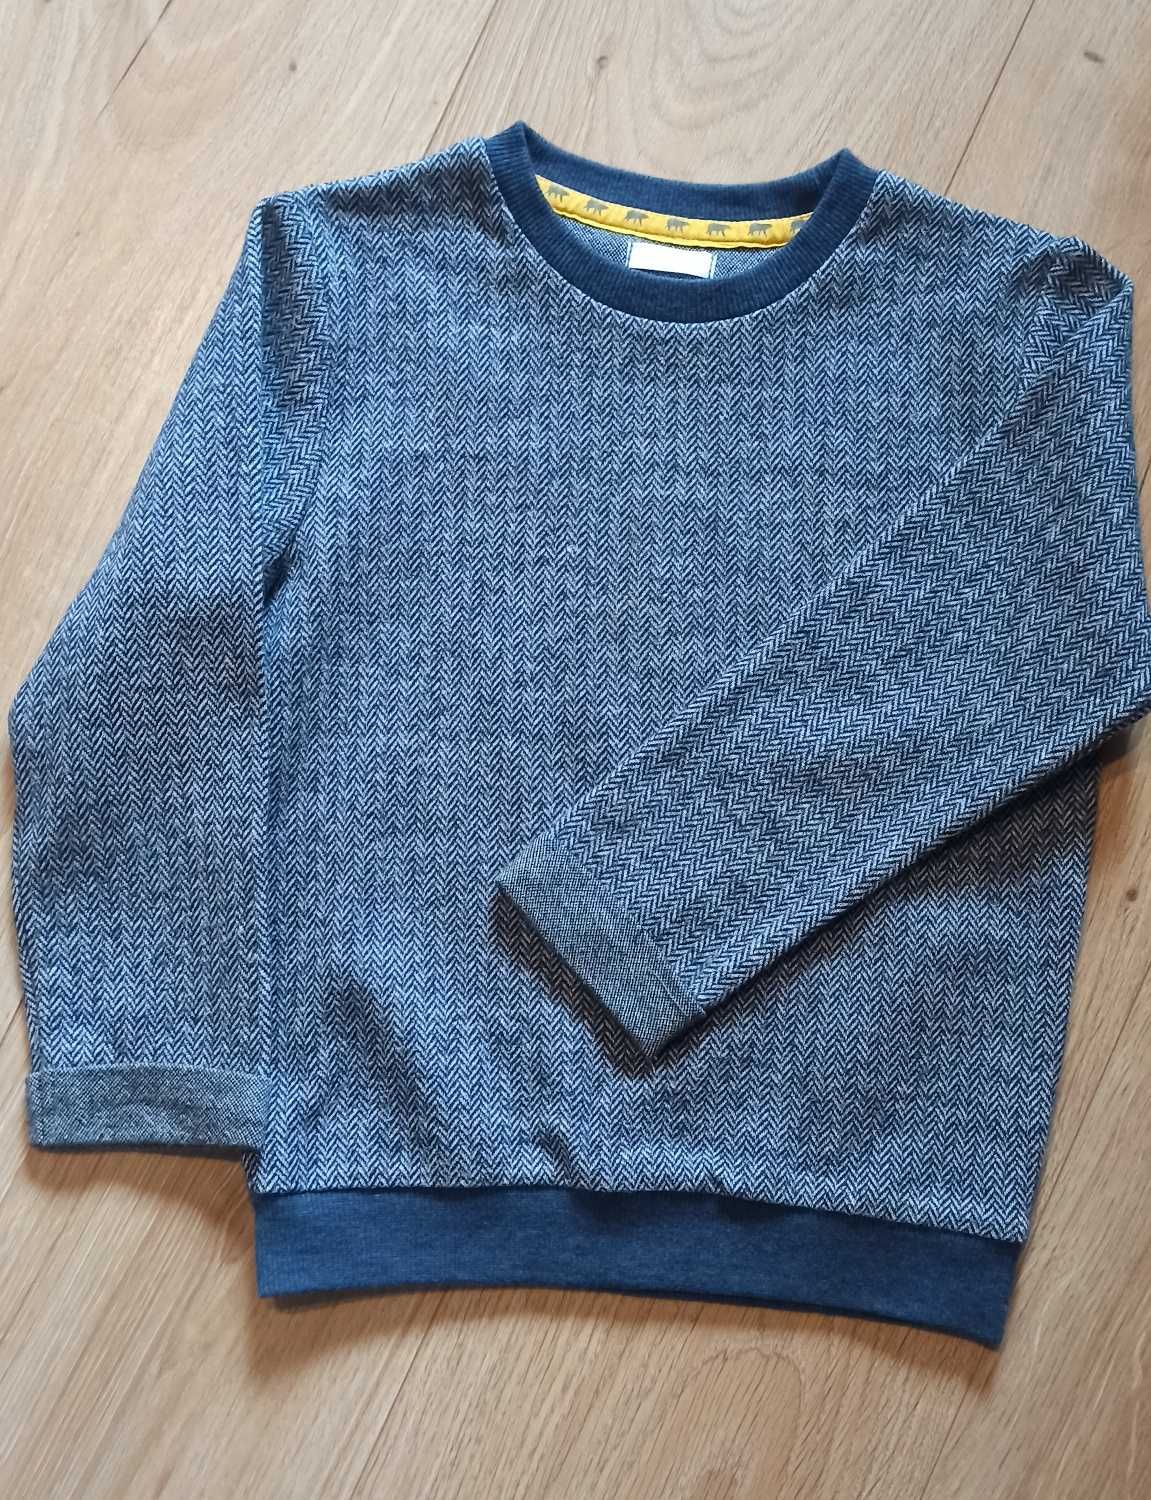 Sweterek jodełka, rozmiar 116